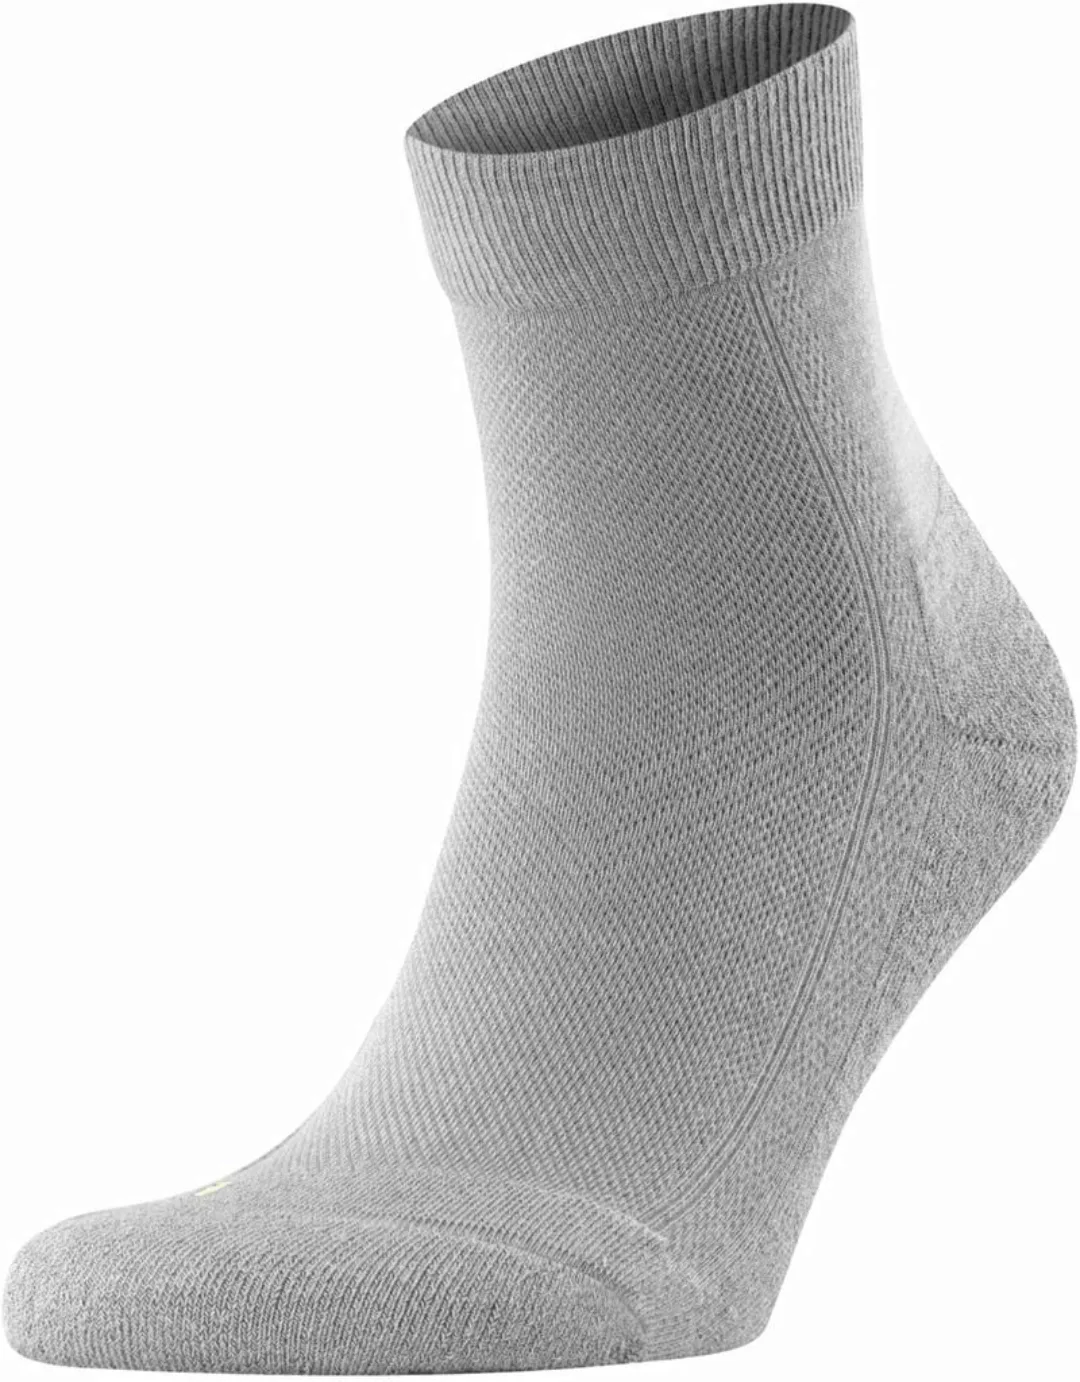 Falke Cool Kick Socke Grau - Größe 39-41 günstig online kaufen